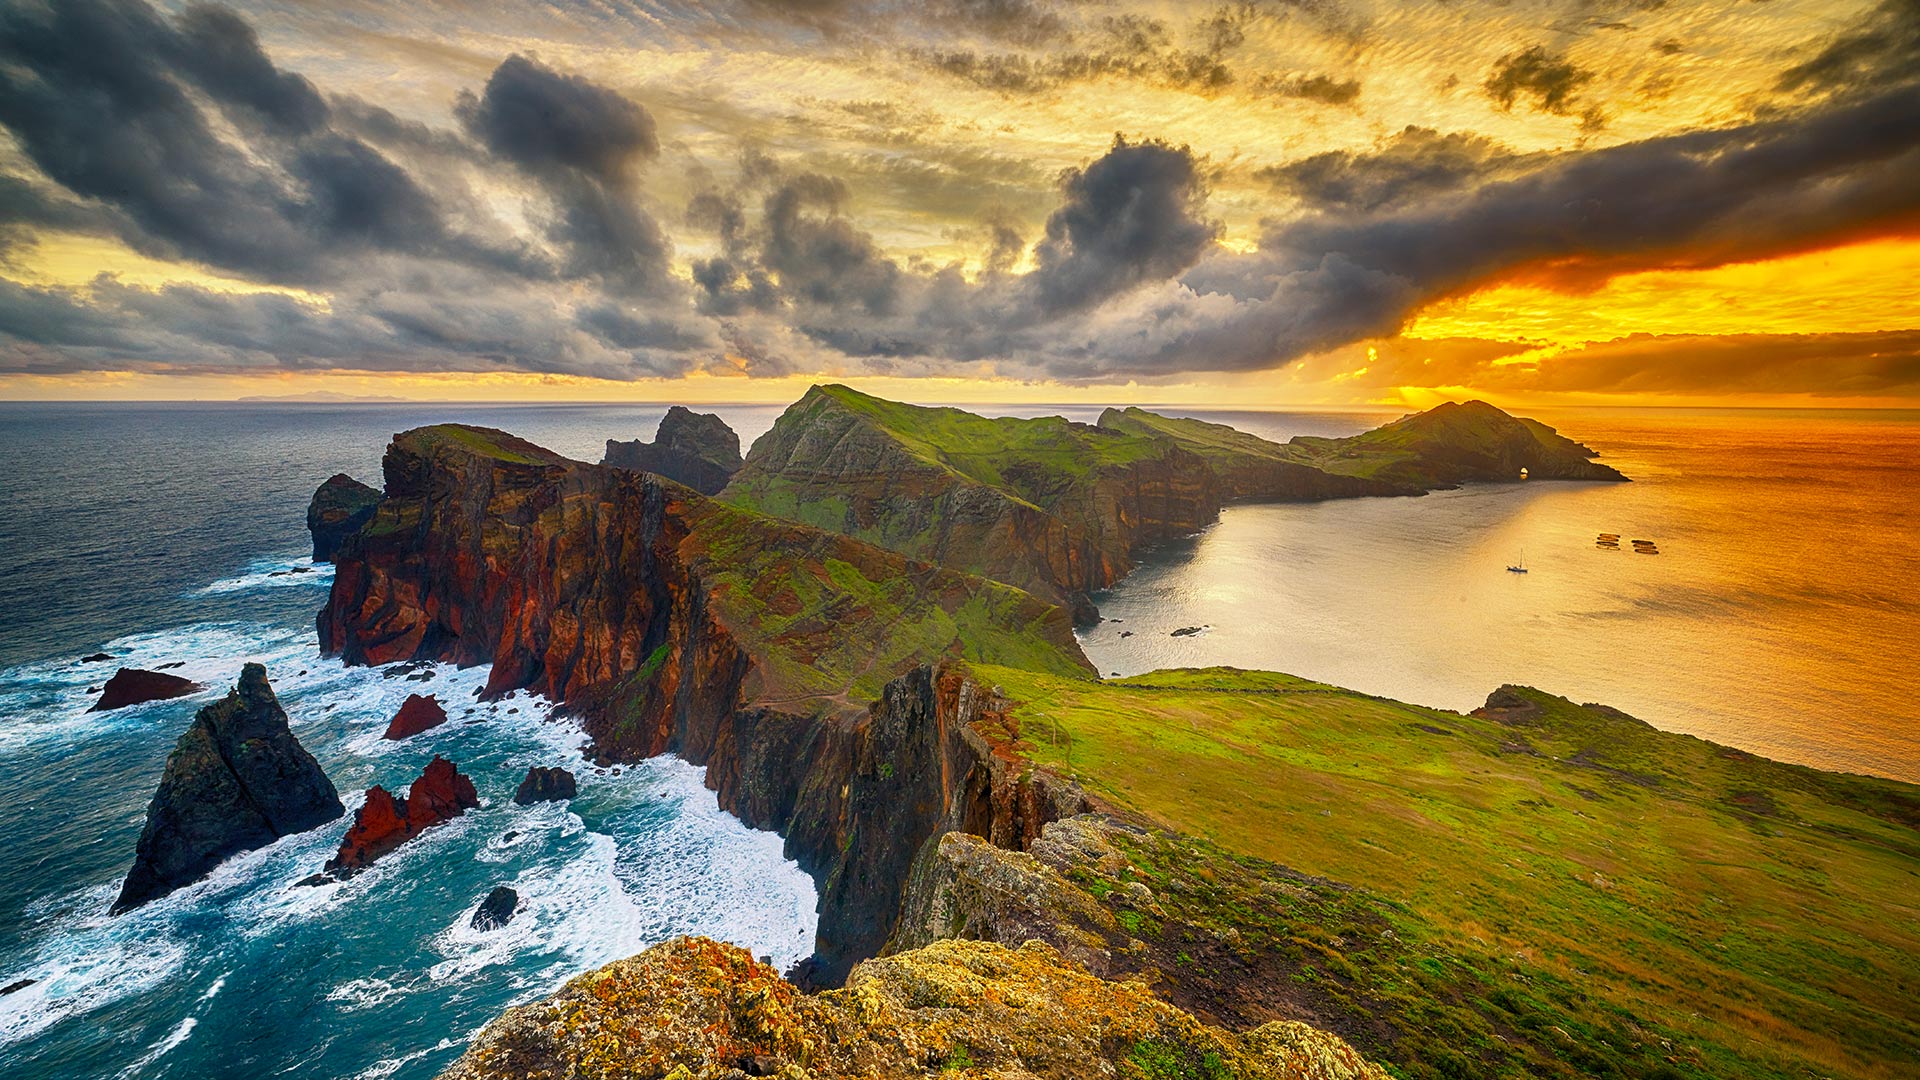 Het woeste, maar schitterende landschap van Madeira